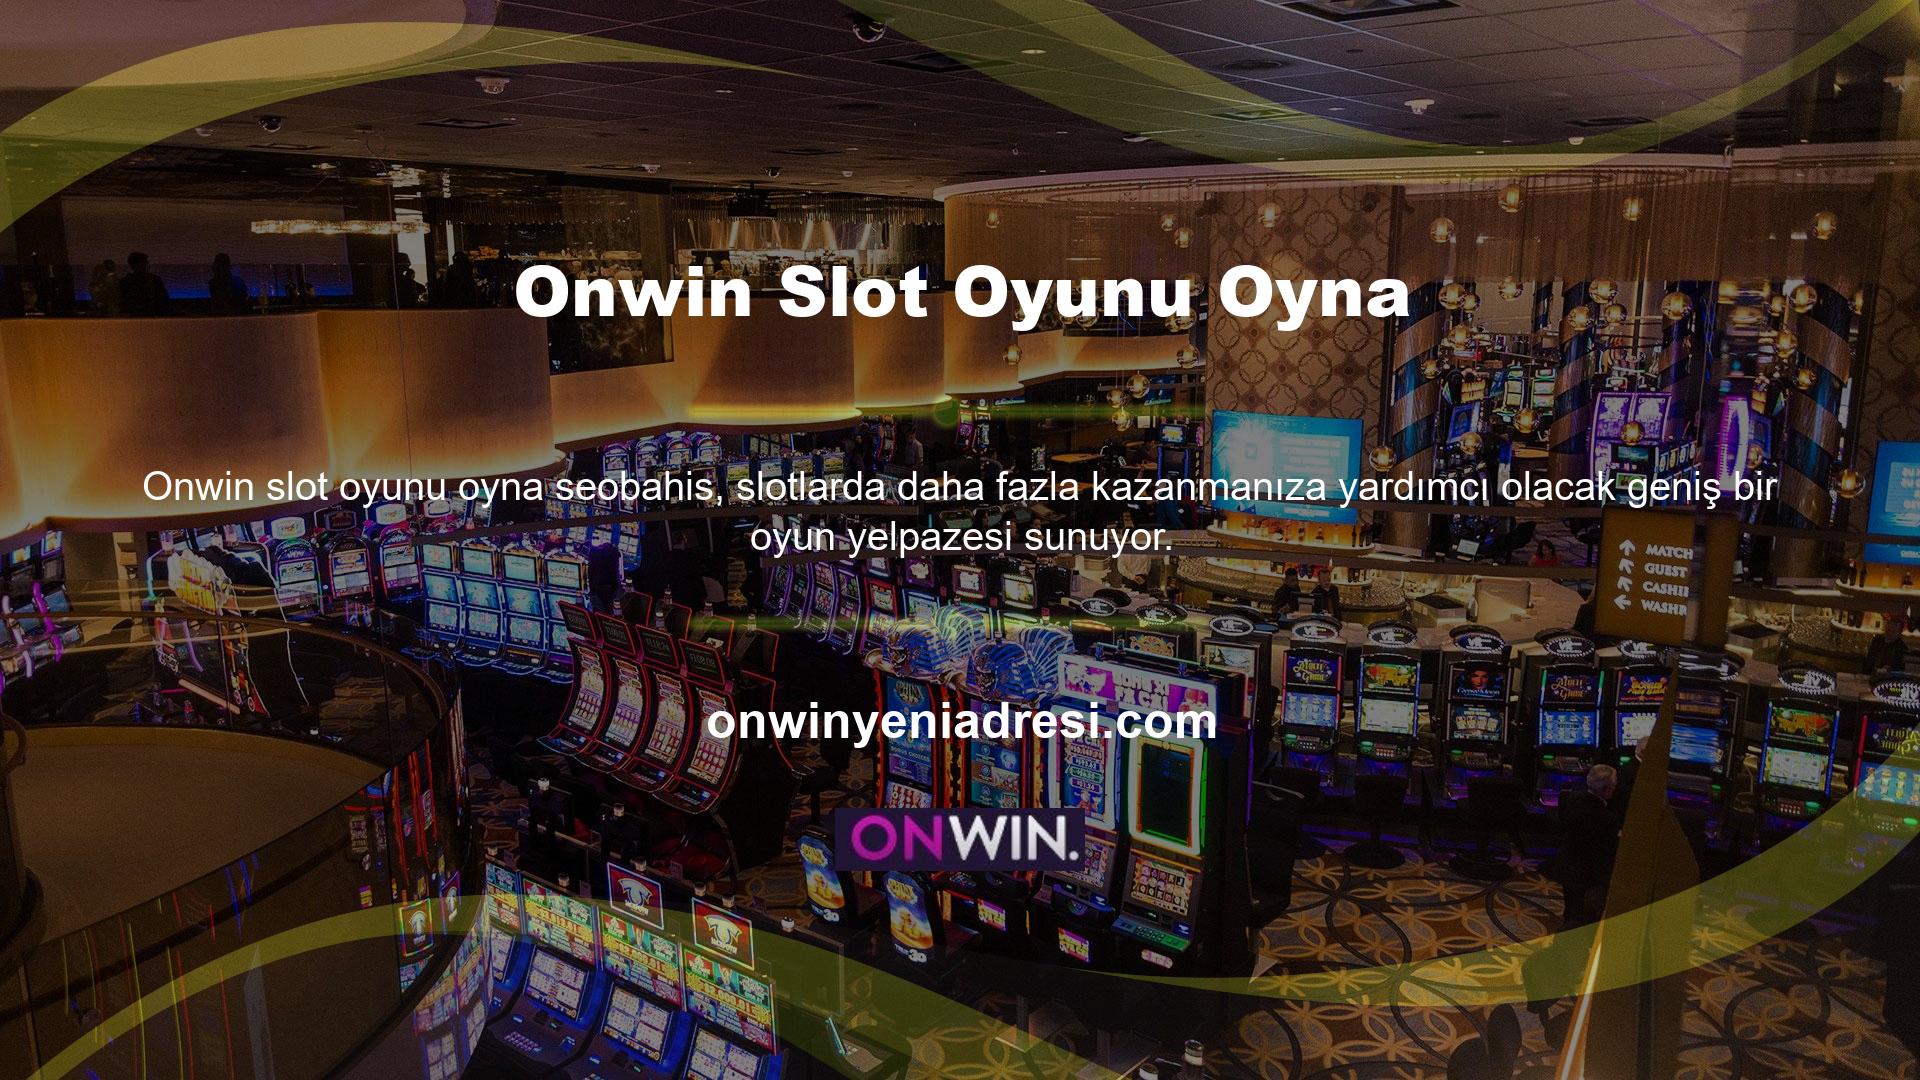 Onwin, en ünlü oyun sağlayıcıların lisanslı slot makinelerini sunmaktadır